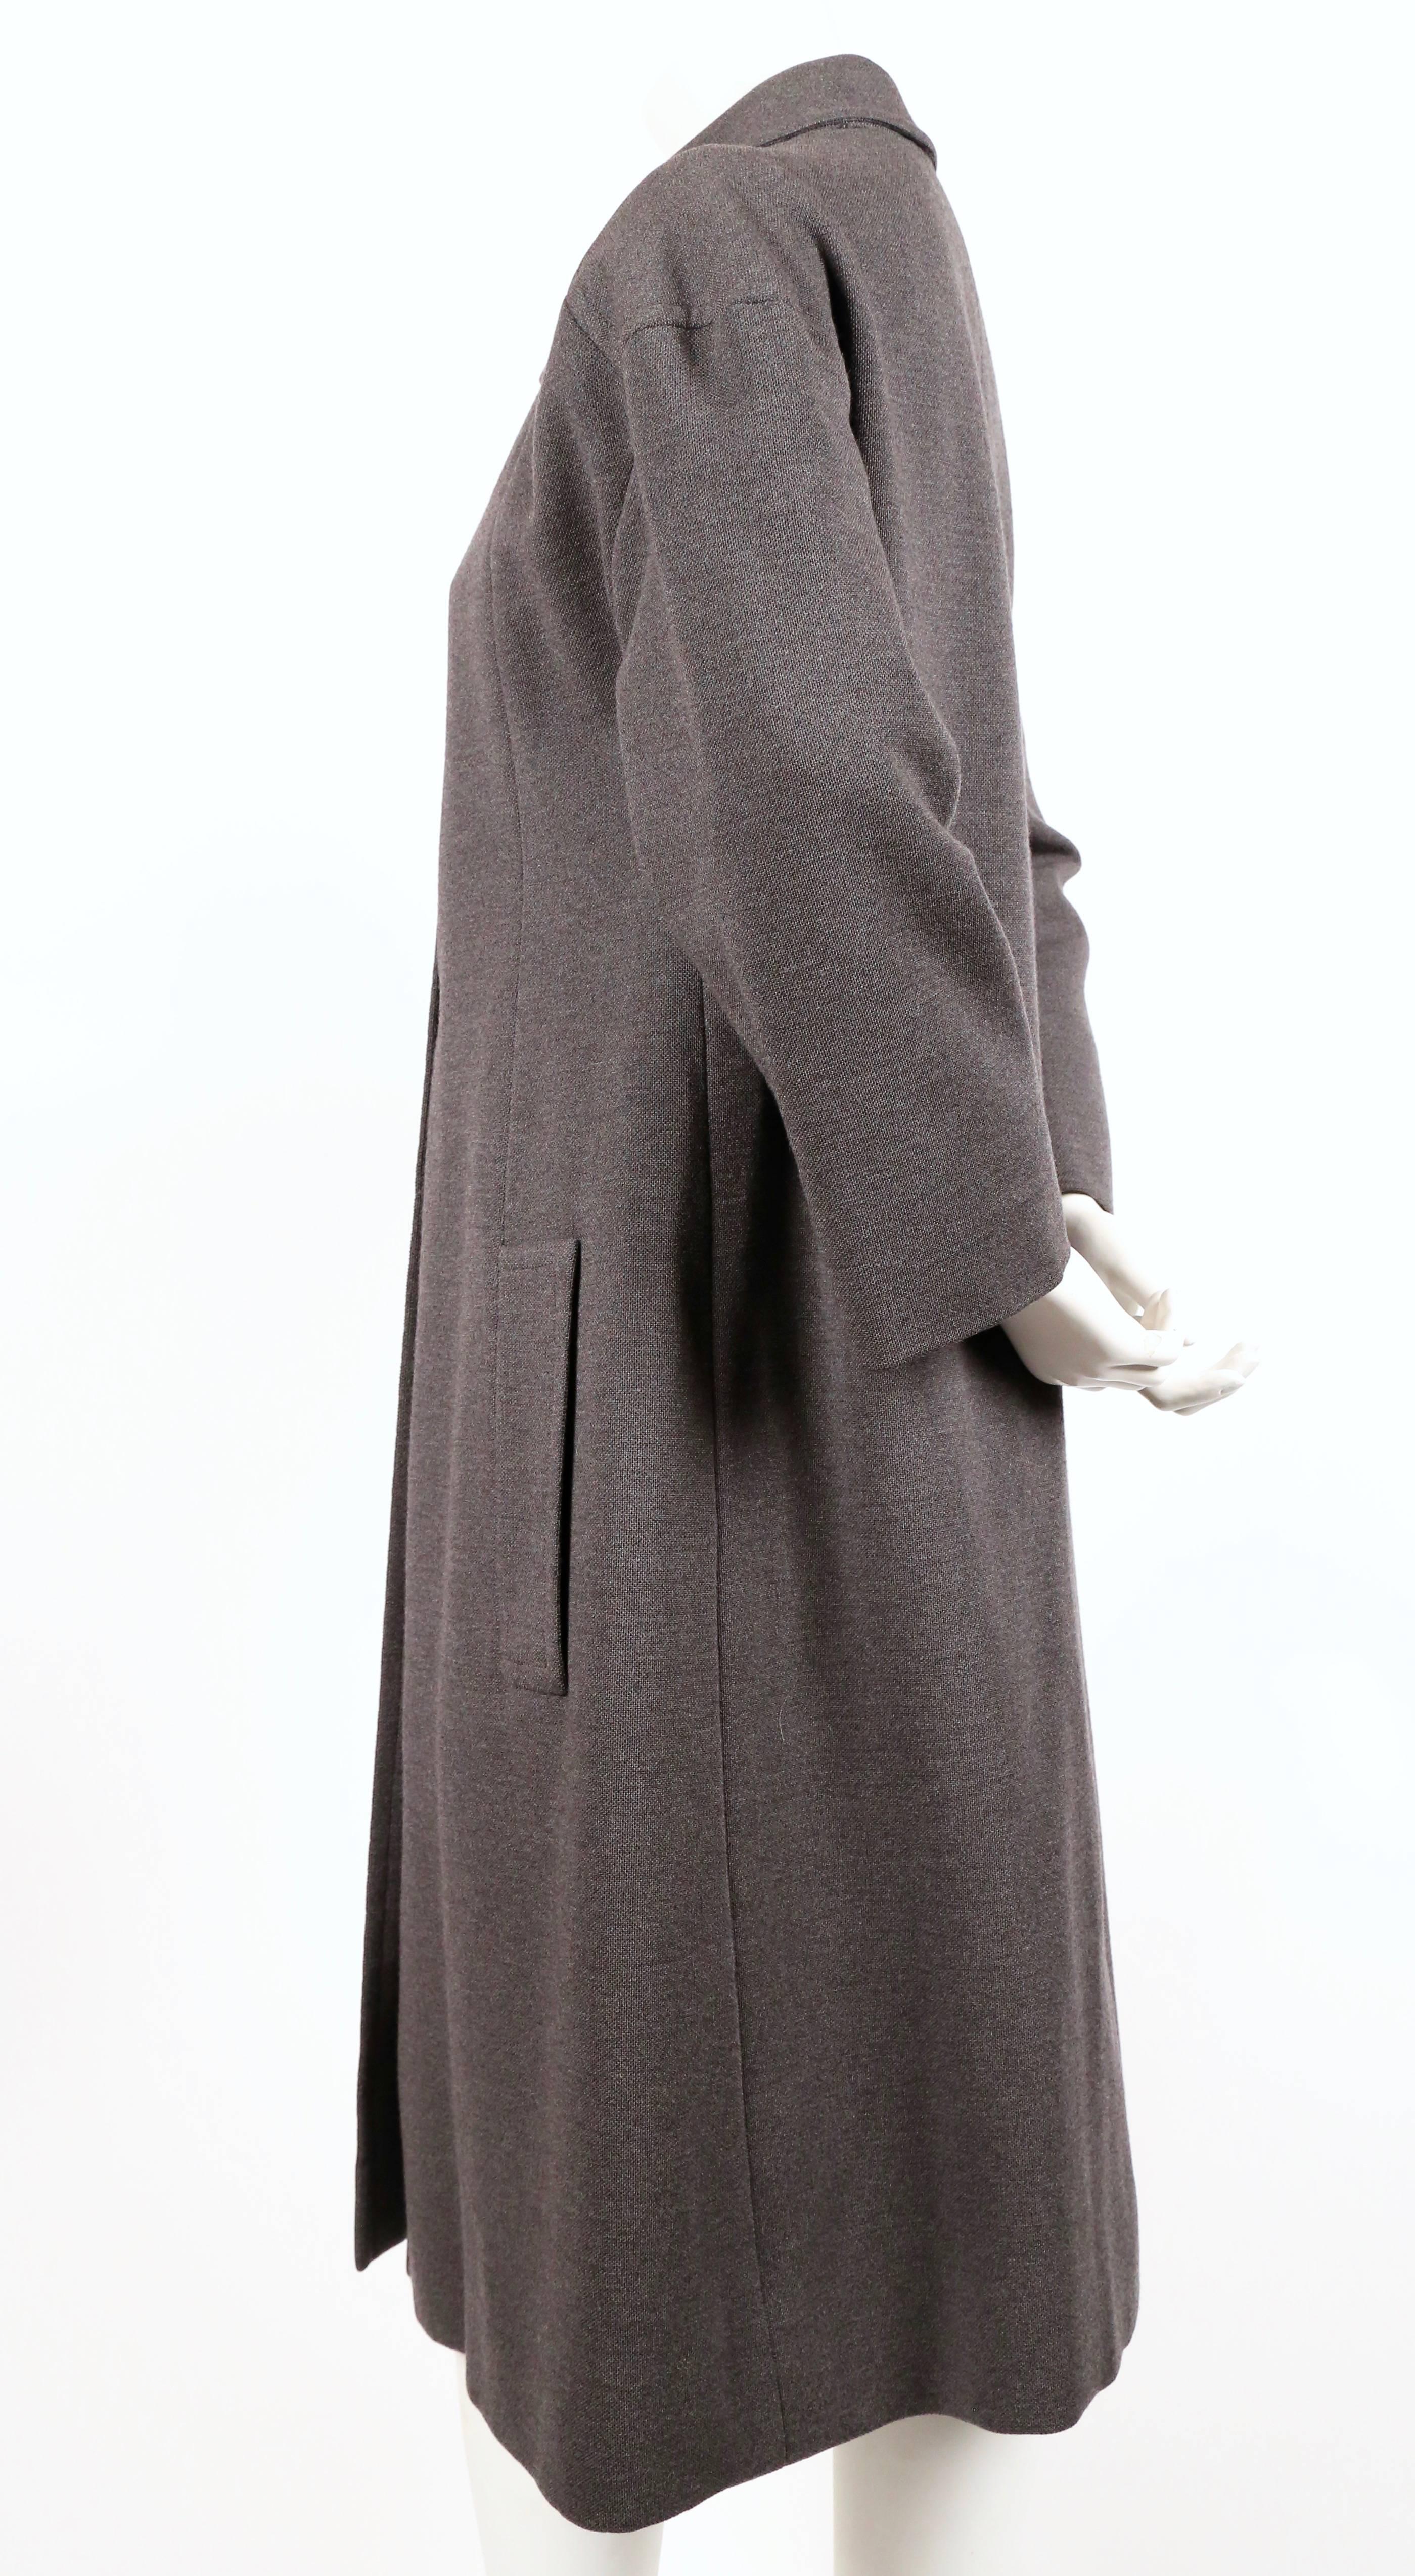 Manteau couture en laine gris anthracite d'Yves Saint Laurent datant des années 1960. Tous les détails que l'on attend d'un vêtement de couture. Les mesures approximatives sont : buste 40